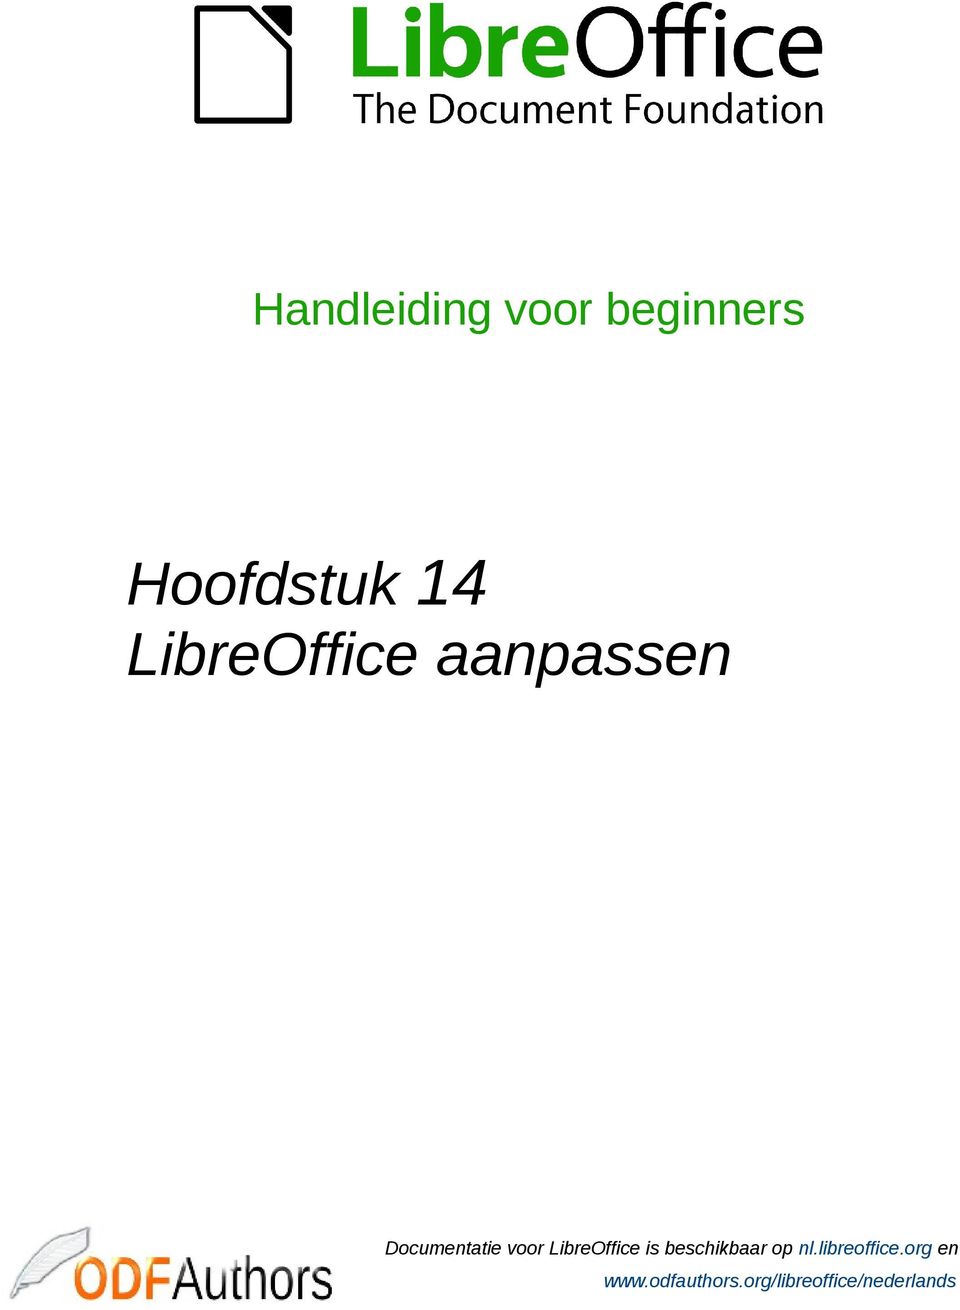 LibreOffice is beschikbaar op nl.